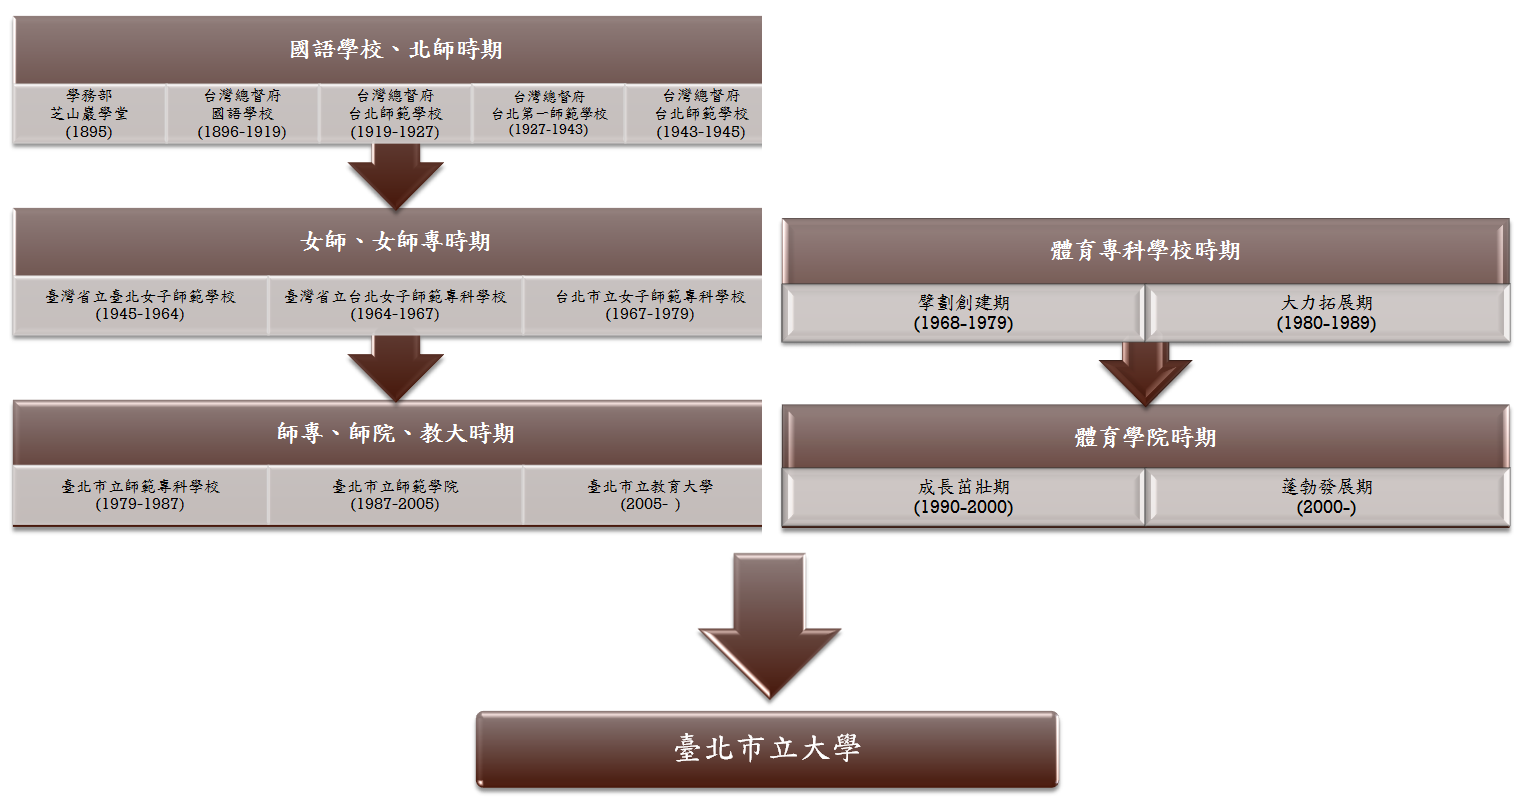 台北市立大學從師院和體院合併之年表